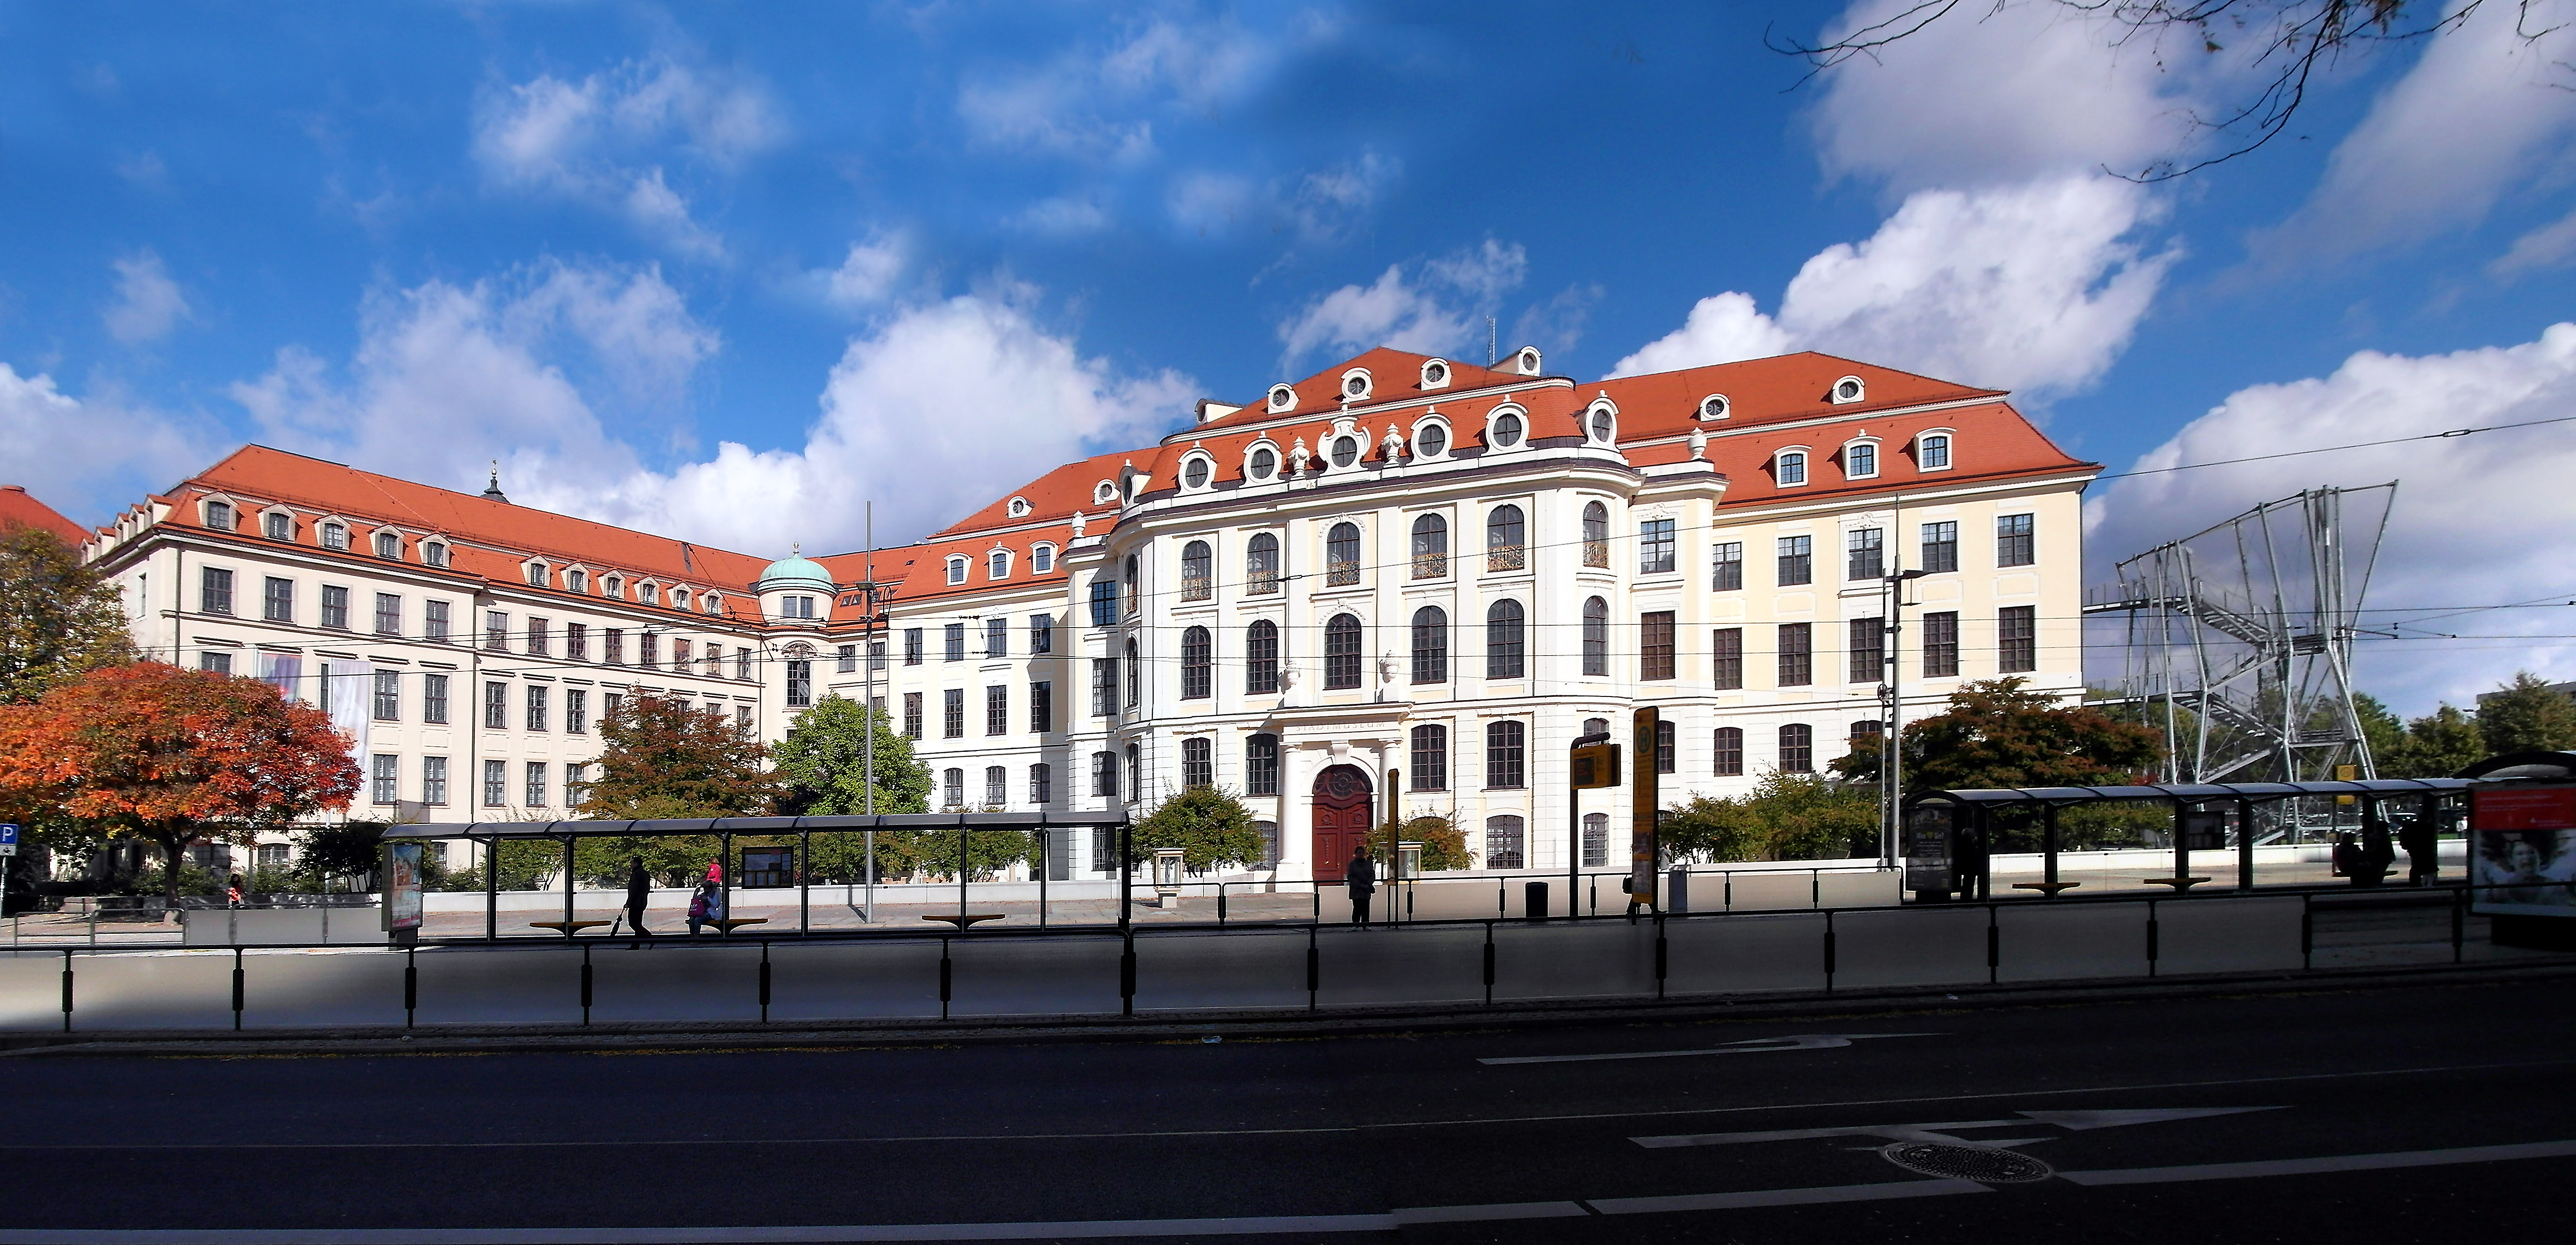 Bảo tàng Thành phố Dresden - Dresden City Museum - Dresden - Đức